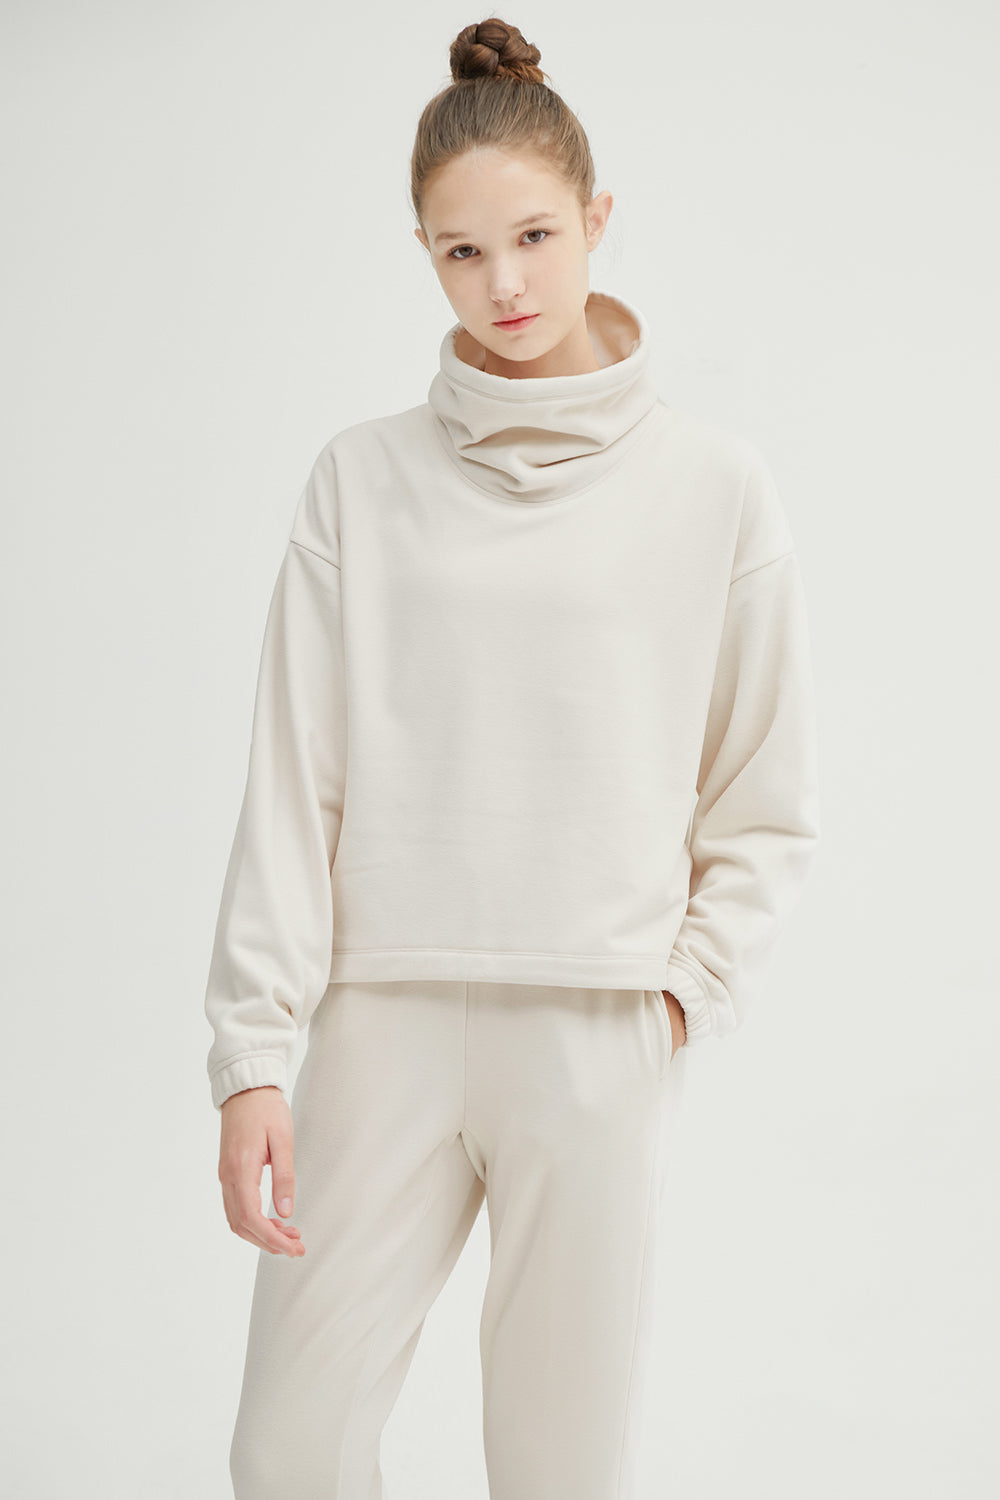 Soft Fleece High-neck Pullover Shirt - andar